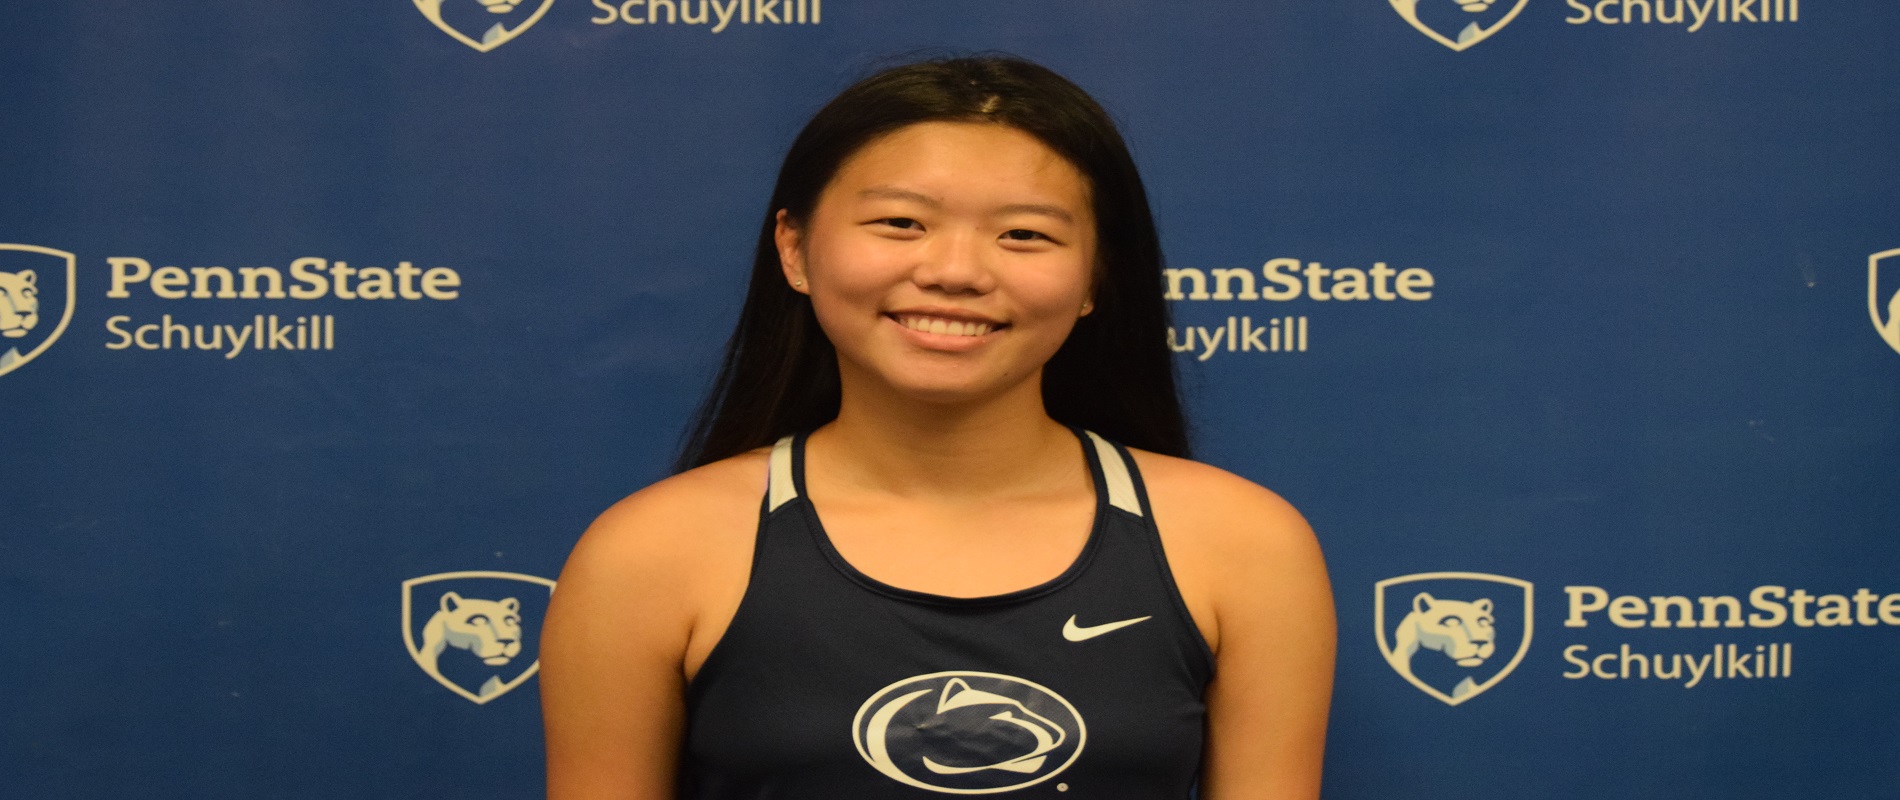 Penn State Schuylkill's Jennie Li.